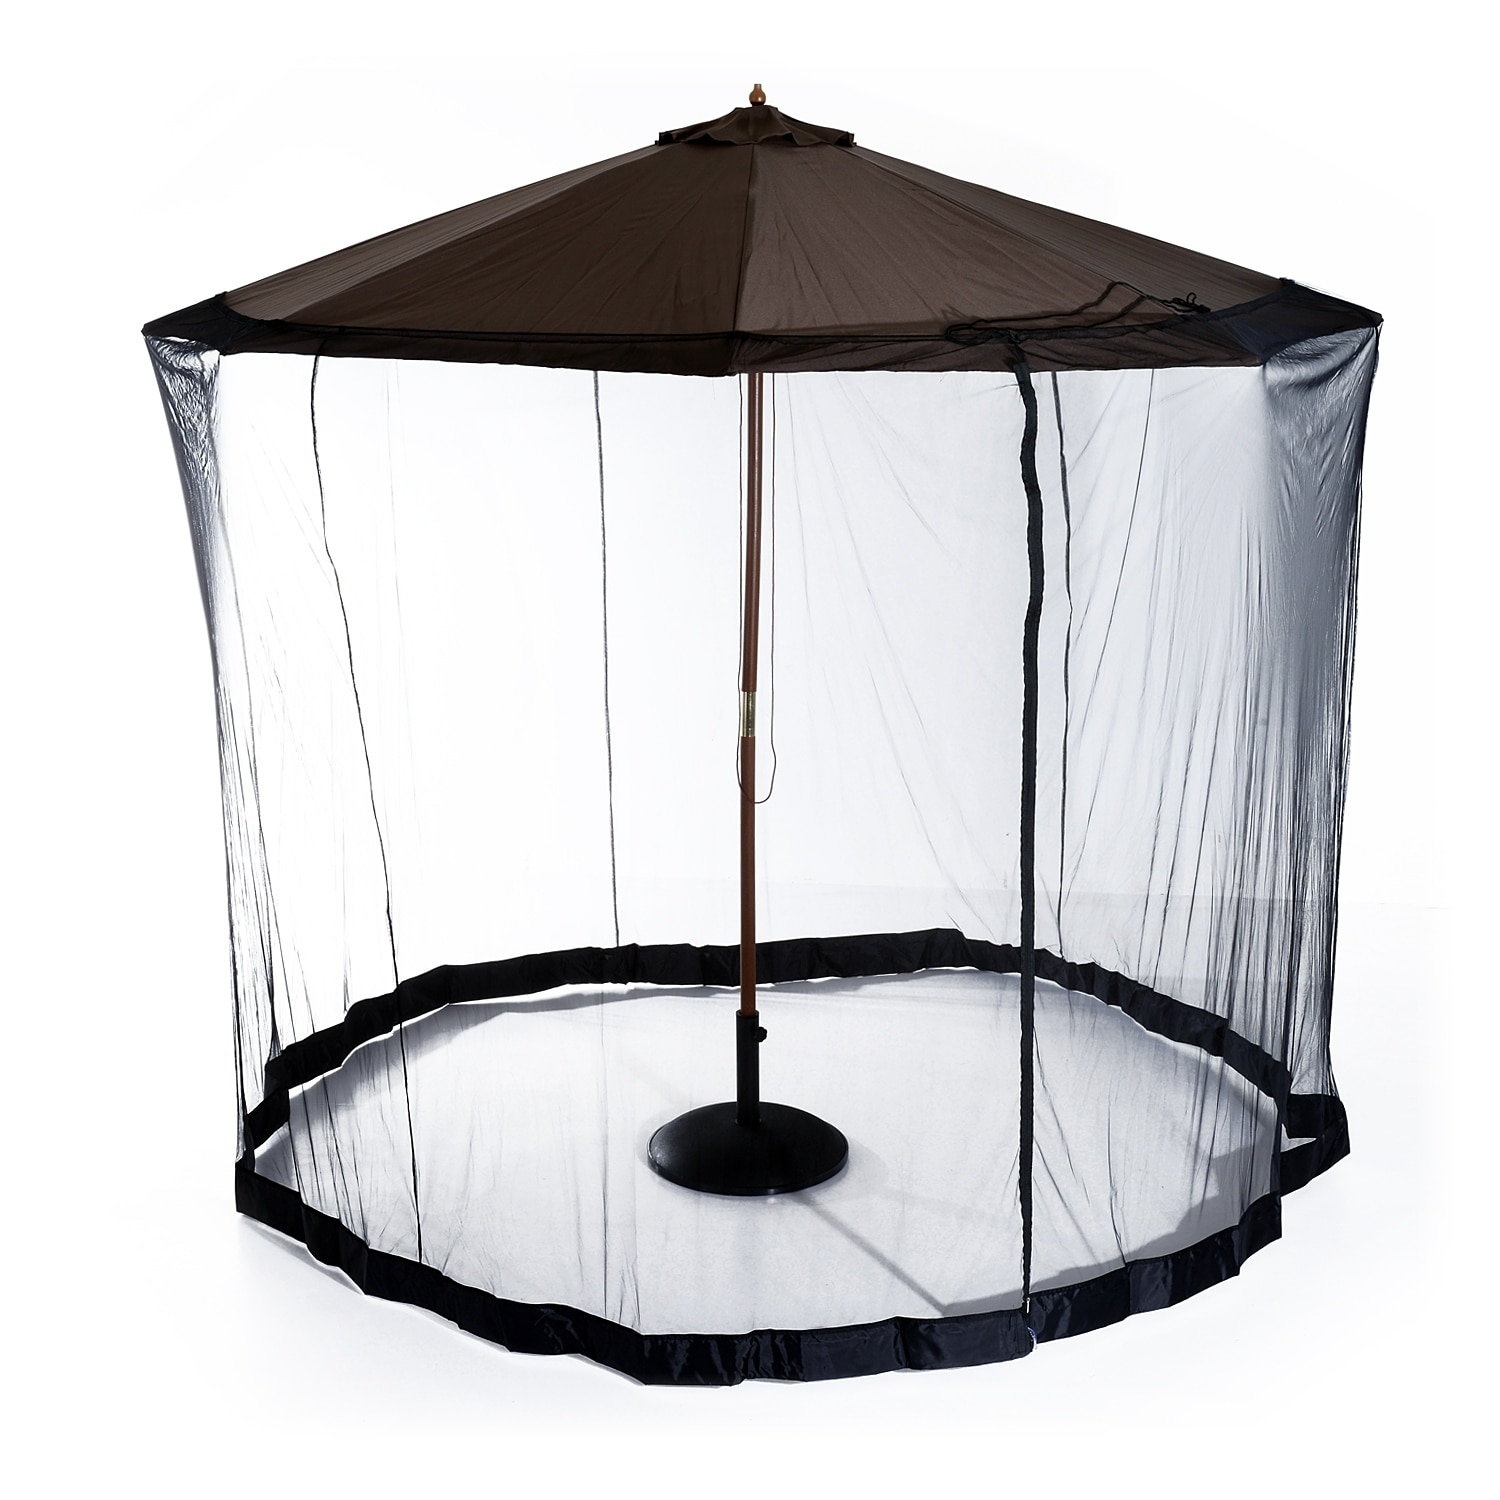 umbrella mosquito net